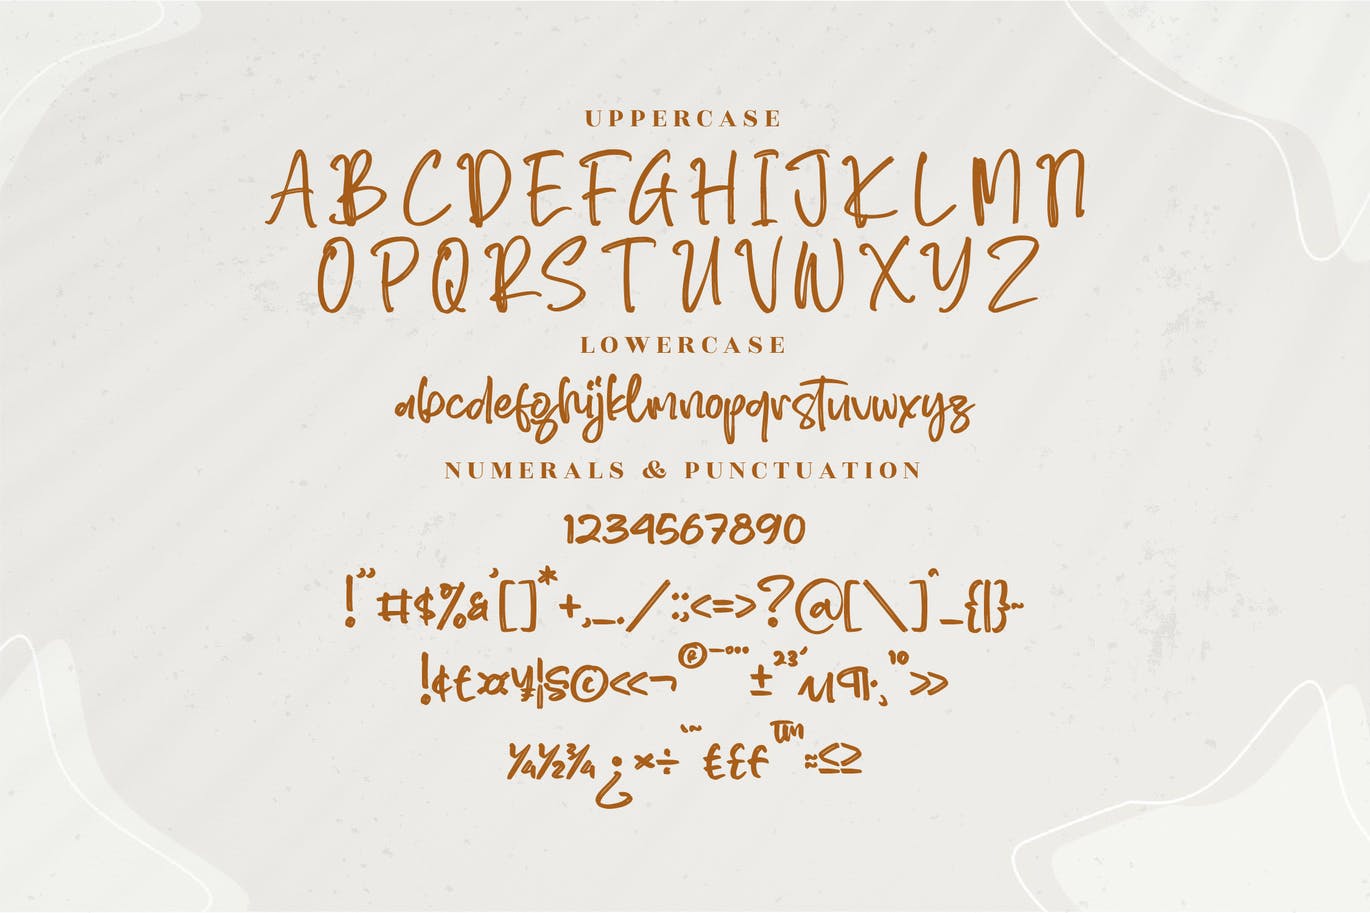 手写毛笔笔刷字体素材 Kassogi Handwritten Brush Font 设计素材 第6张